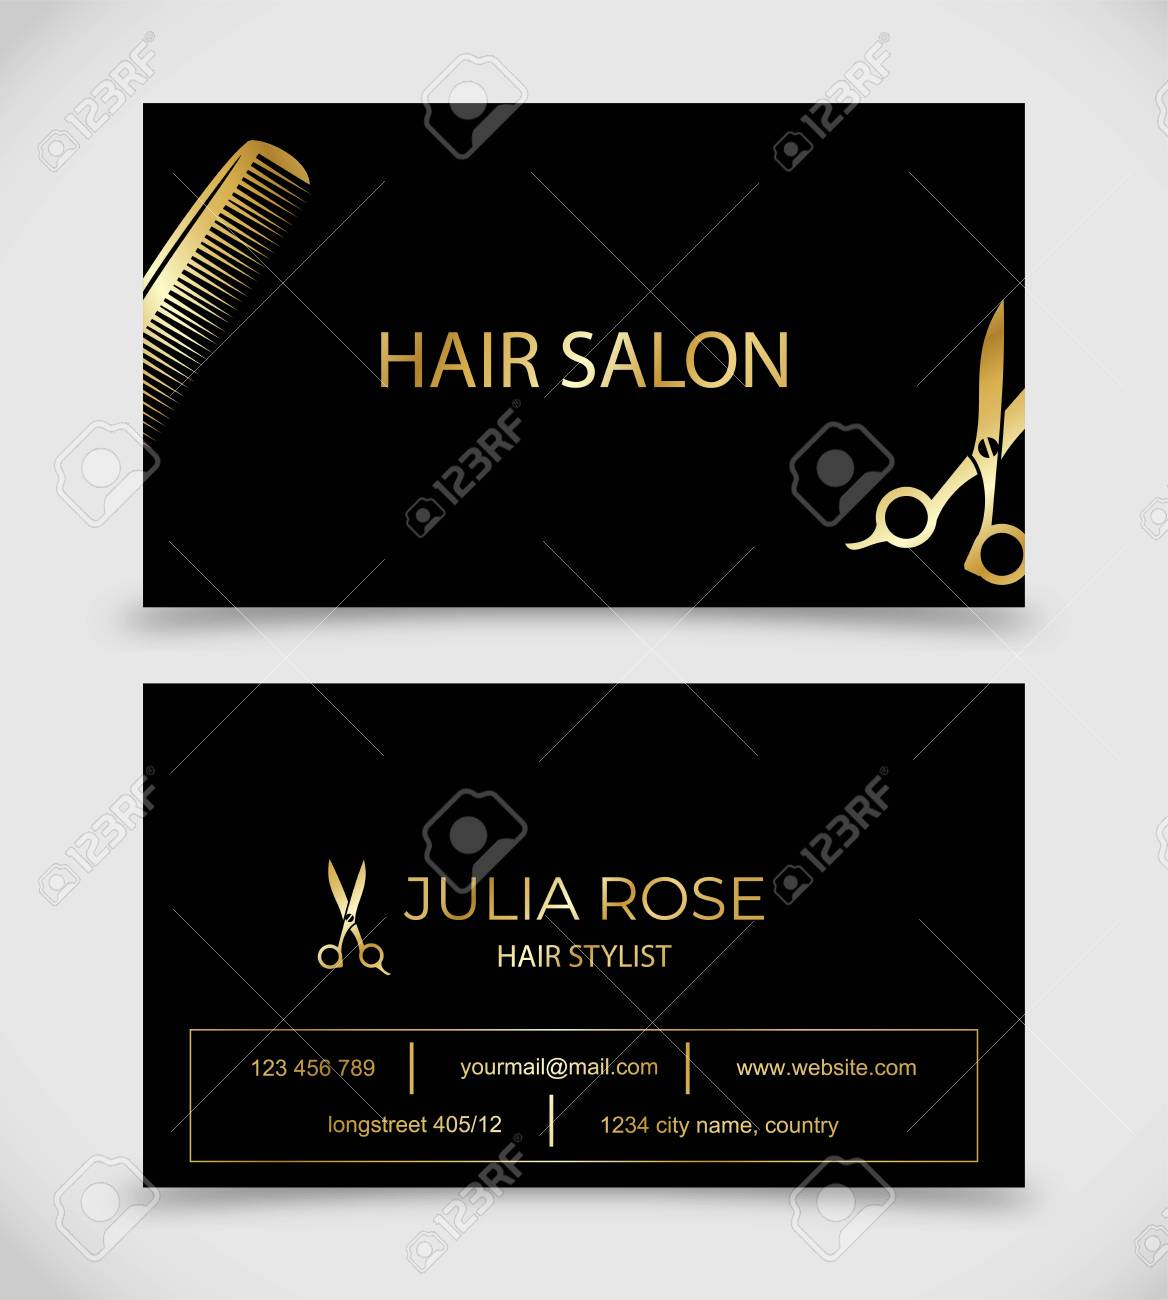 Hair Salon, Hair Stylist Business Card Vector Template Pertaining To Hair Salon Business Card Template